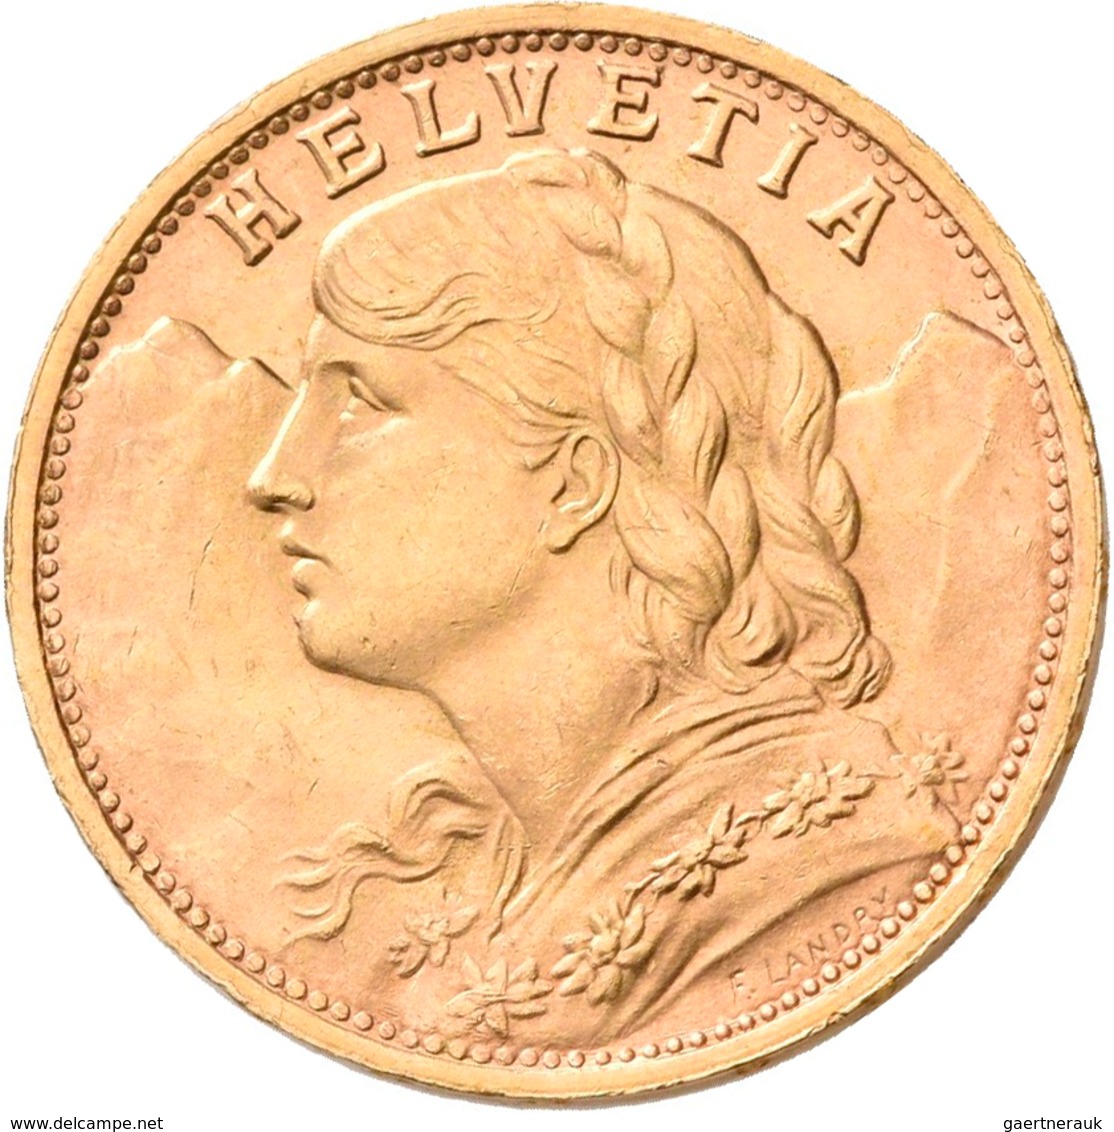 Schweiz - Anlagegold: Lot 5 Goldmünzen: 1 x 10 Franken 1922; 2 x 20 Franken 1889 + 1896 (Helvetia) s